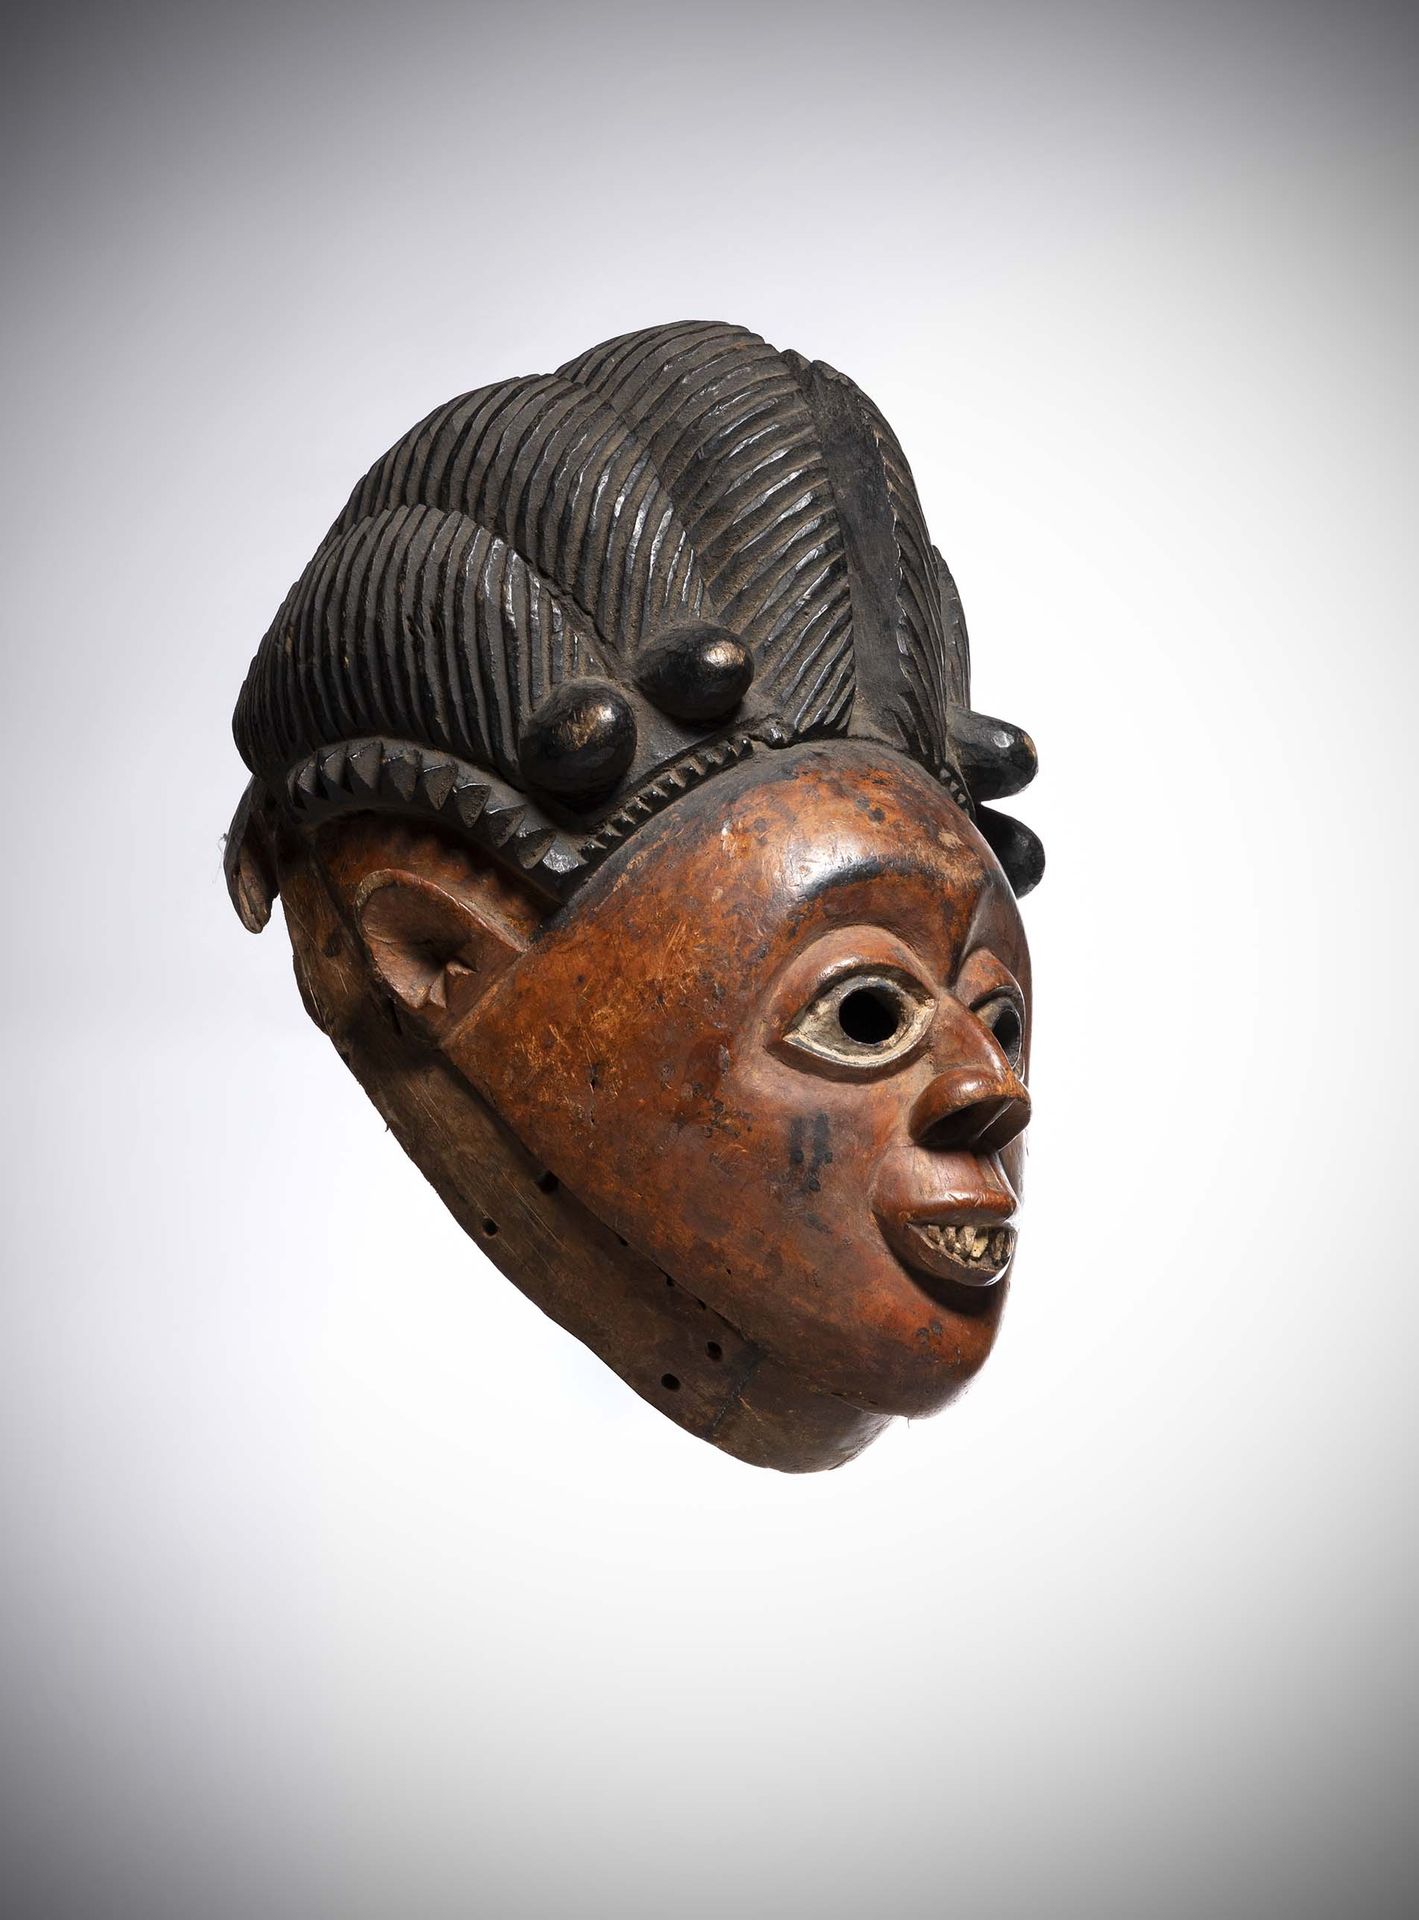 Null Bini

(Nigeria) Grande maschera con un volto espressivo sormontato da un'ac&hellip;